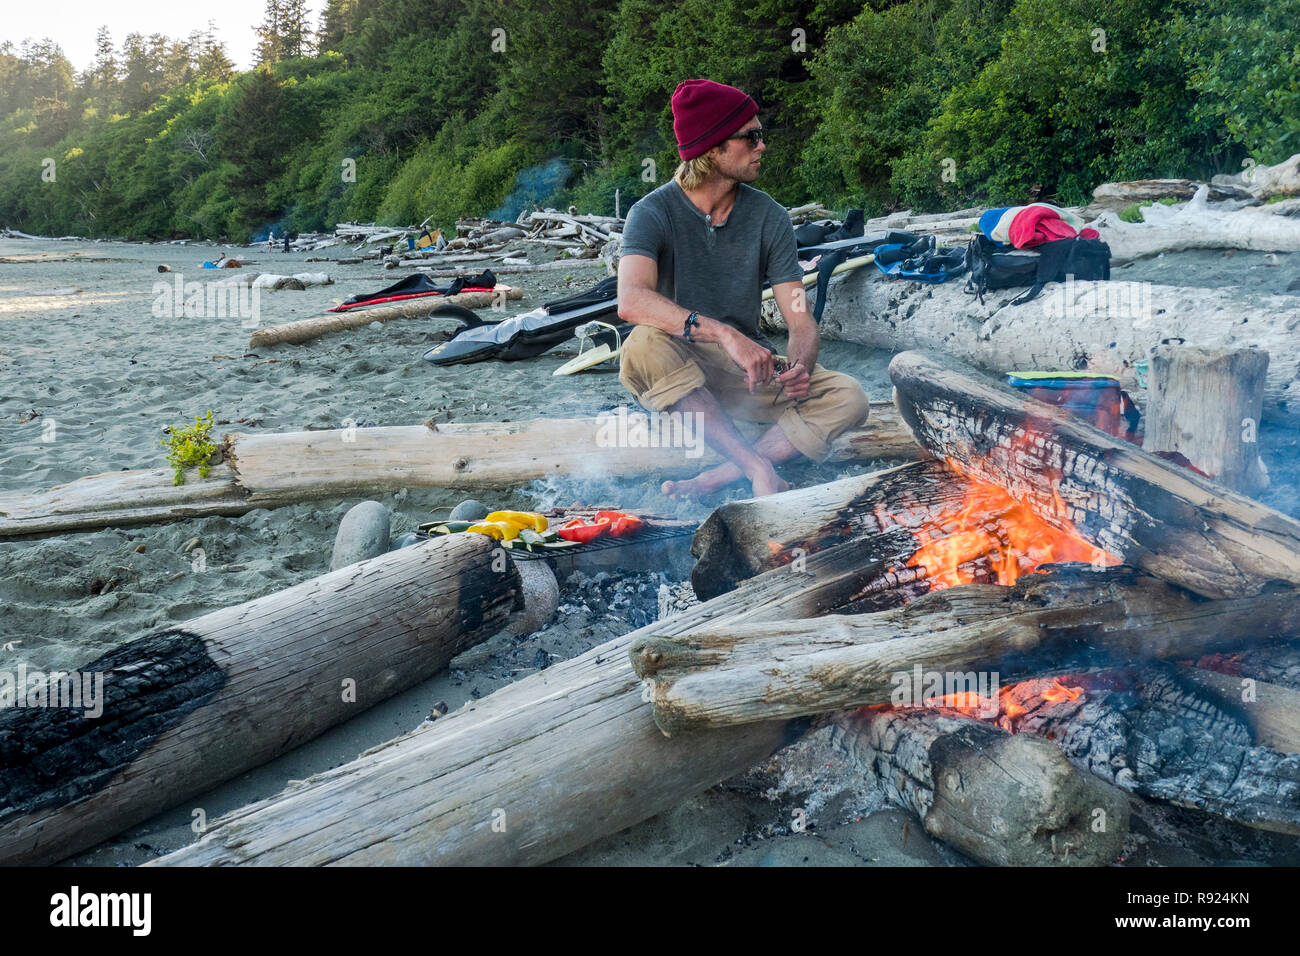 Un homme est assis par un incendie et attend pour apprécier un barbecue après une session de surf à la baie Florencia dans Tofion, British Columbia, Canada Banque D'Images